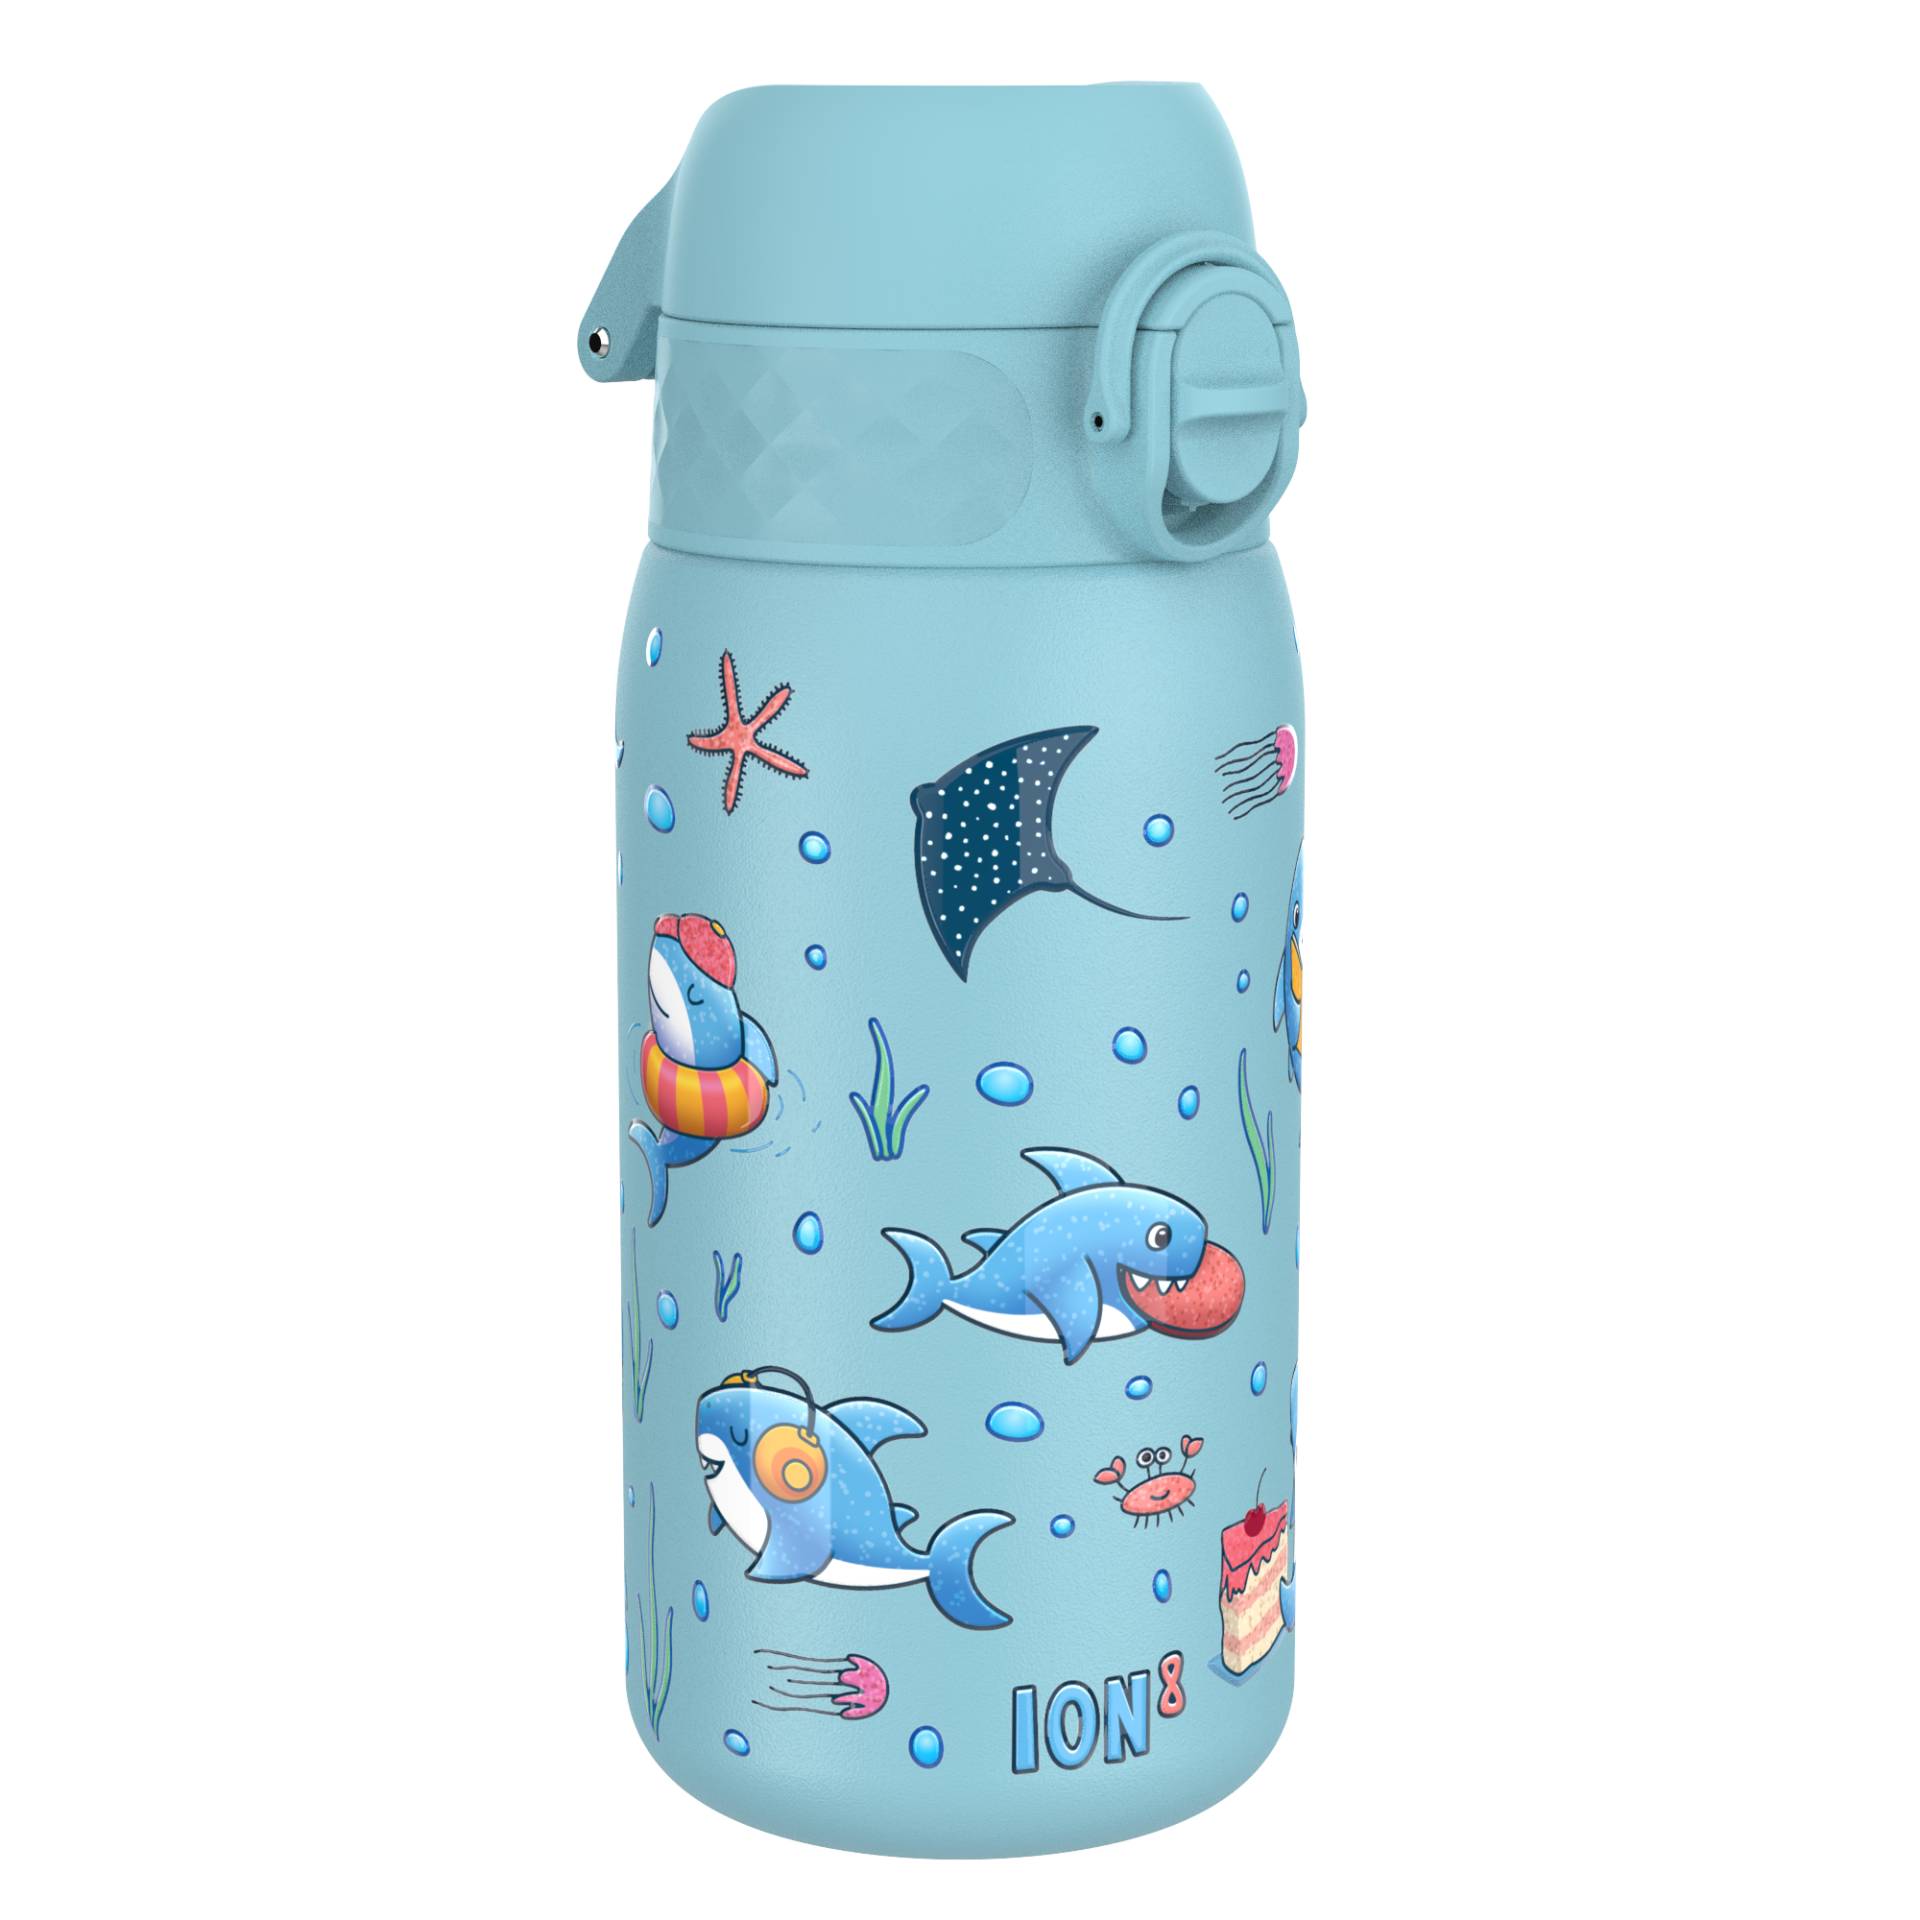 ion8 Kinder-Wasserflasche Edelstahl 400 ml hellblau von ION8